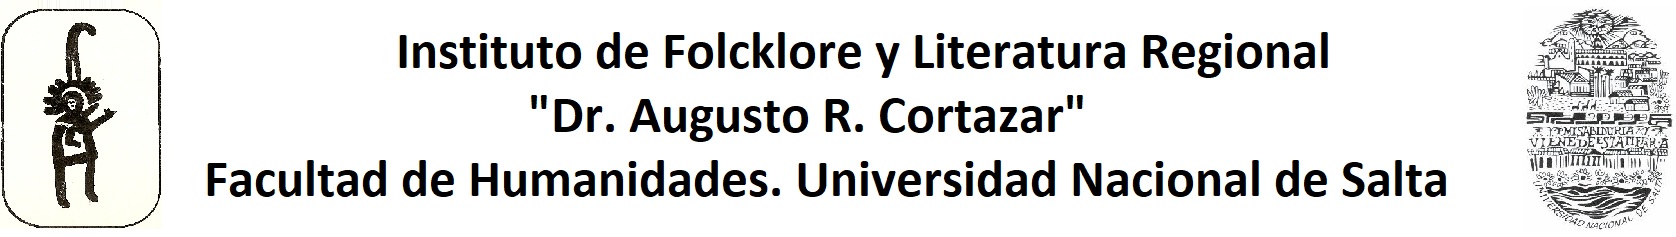 Instituto de Folcklore y Literatura Regional "Dr. Augusto R. Cortazar" Facultad de Humanidades. Universidad nacional de Salta